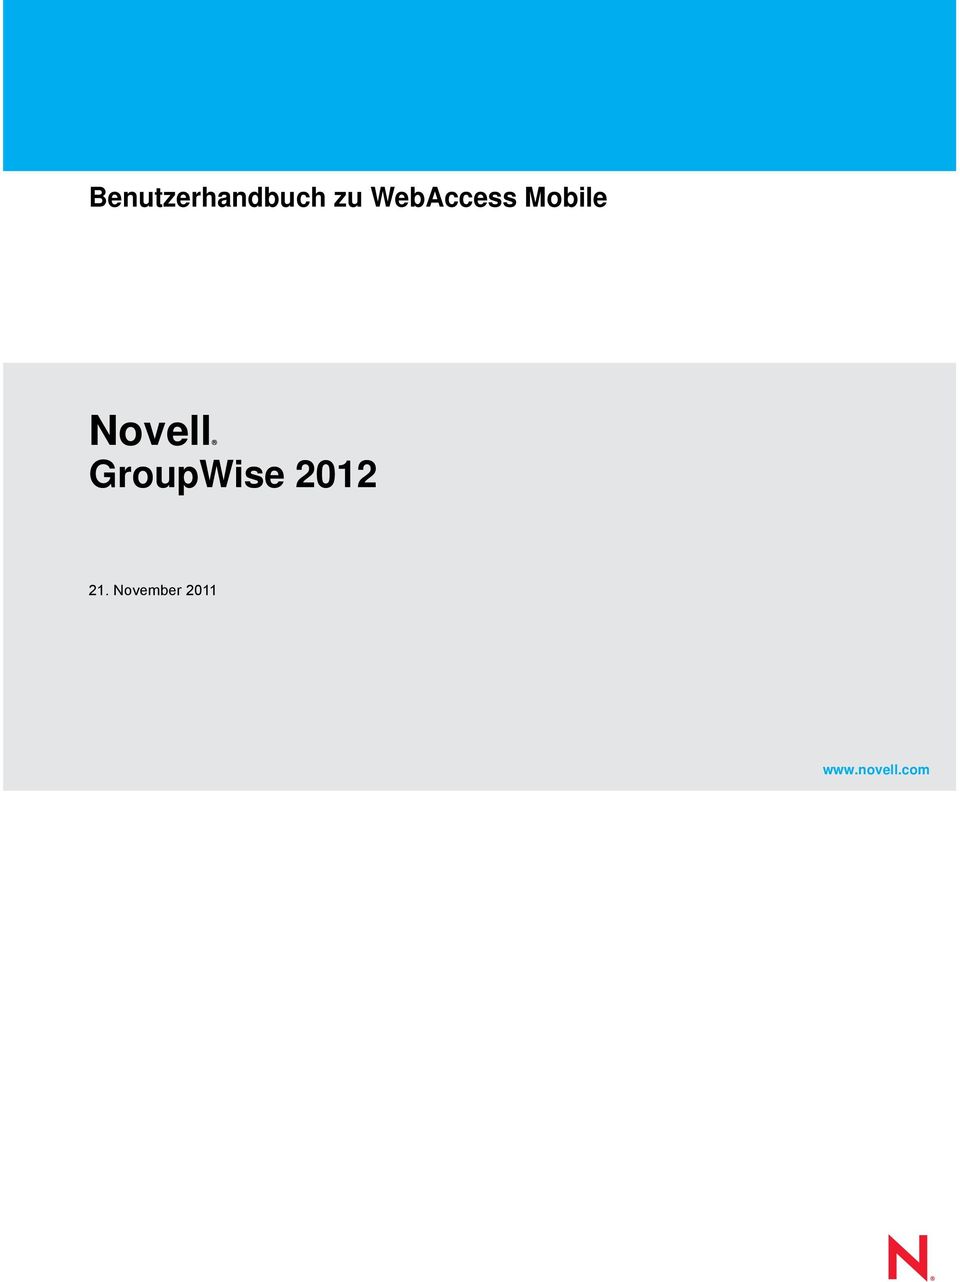 Novell GroupWise 2012